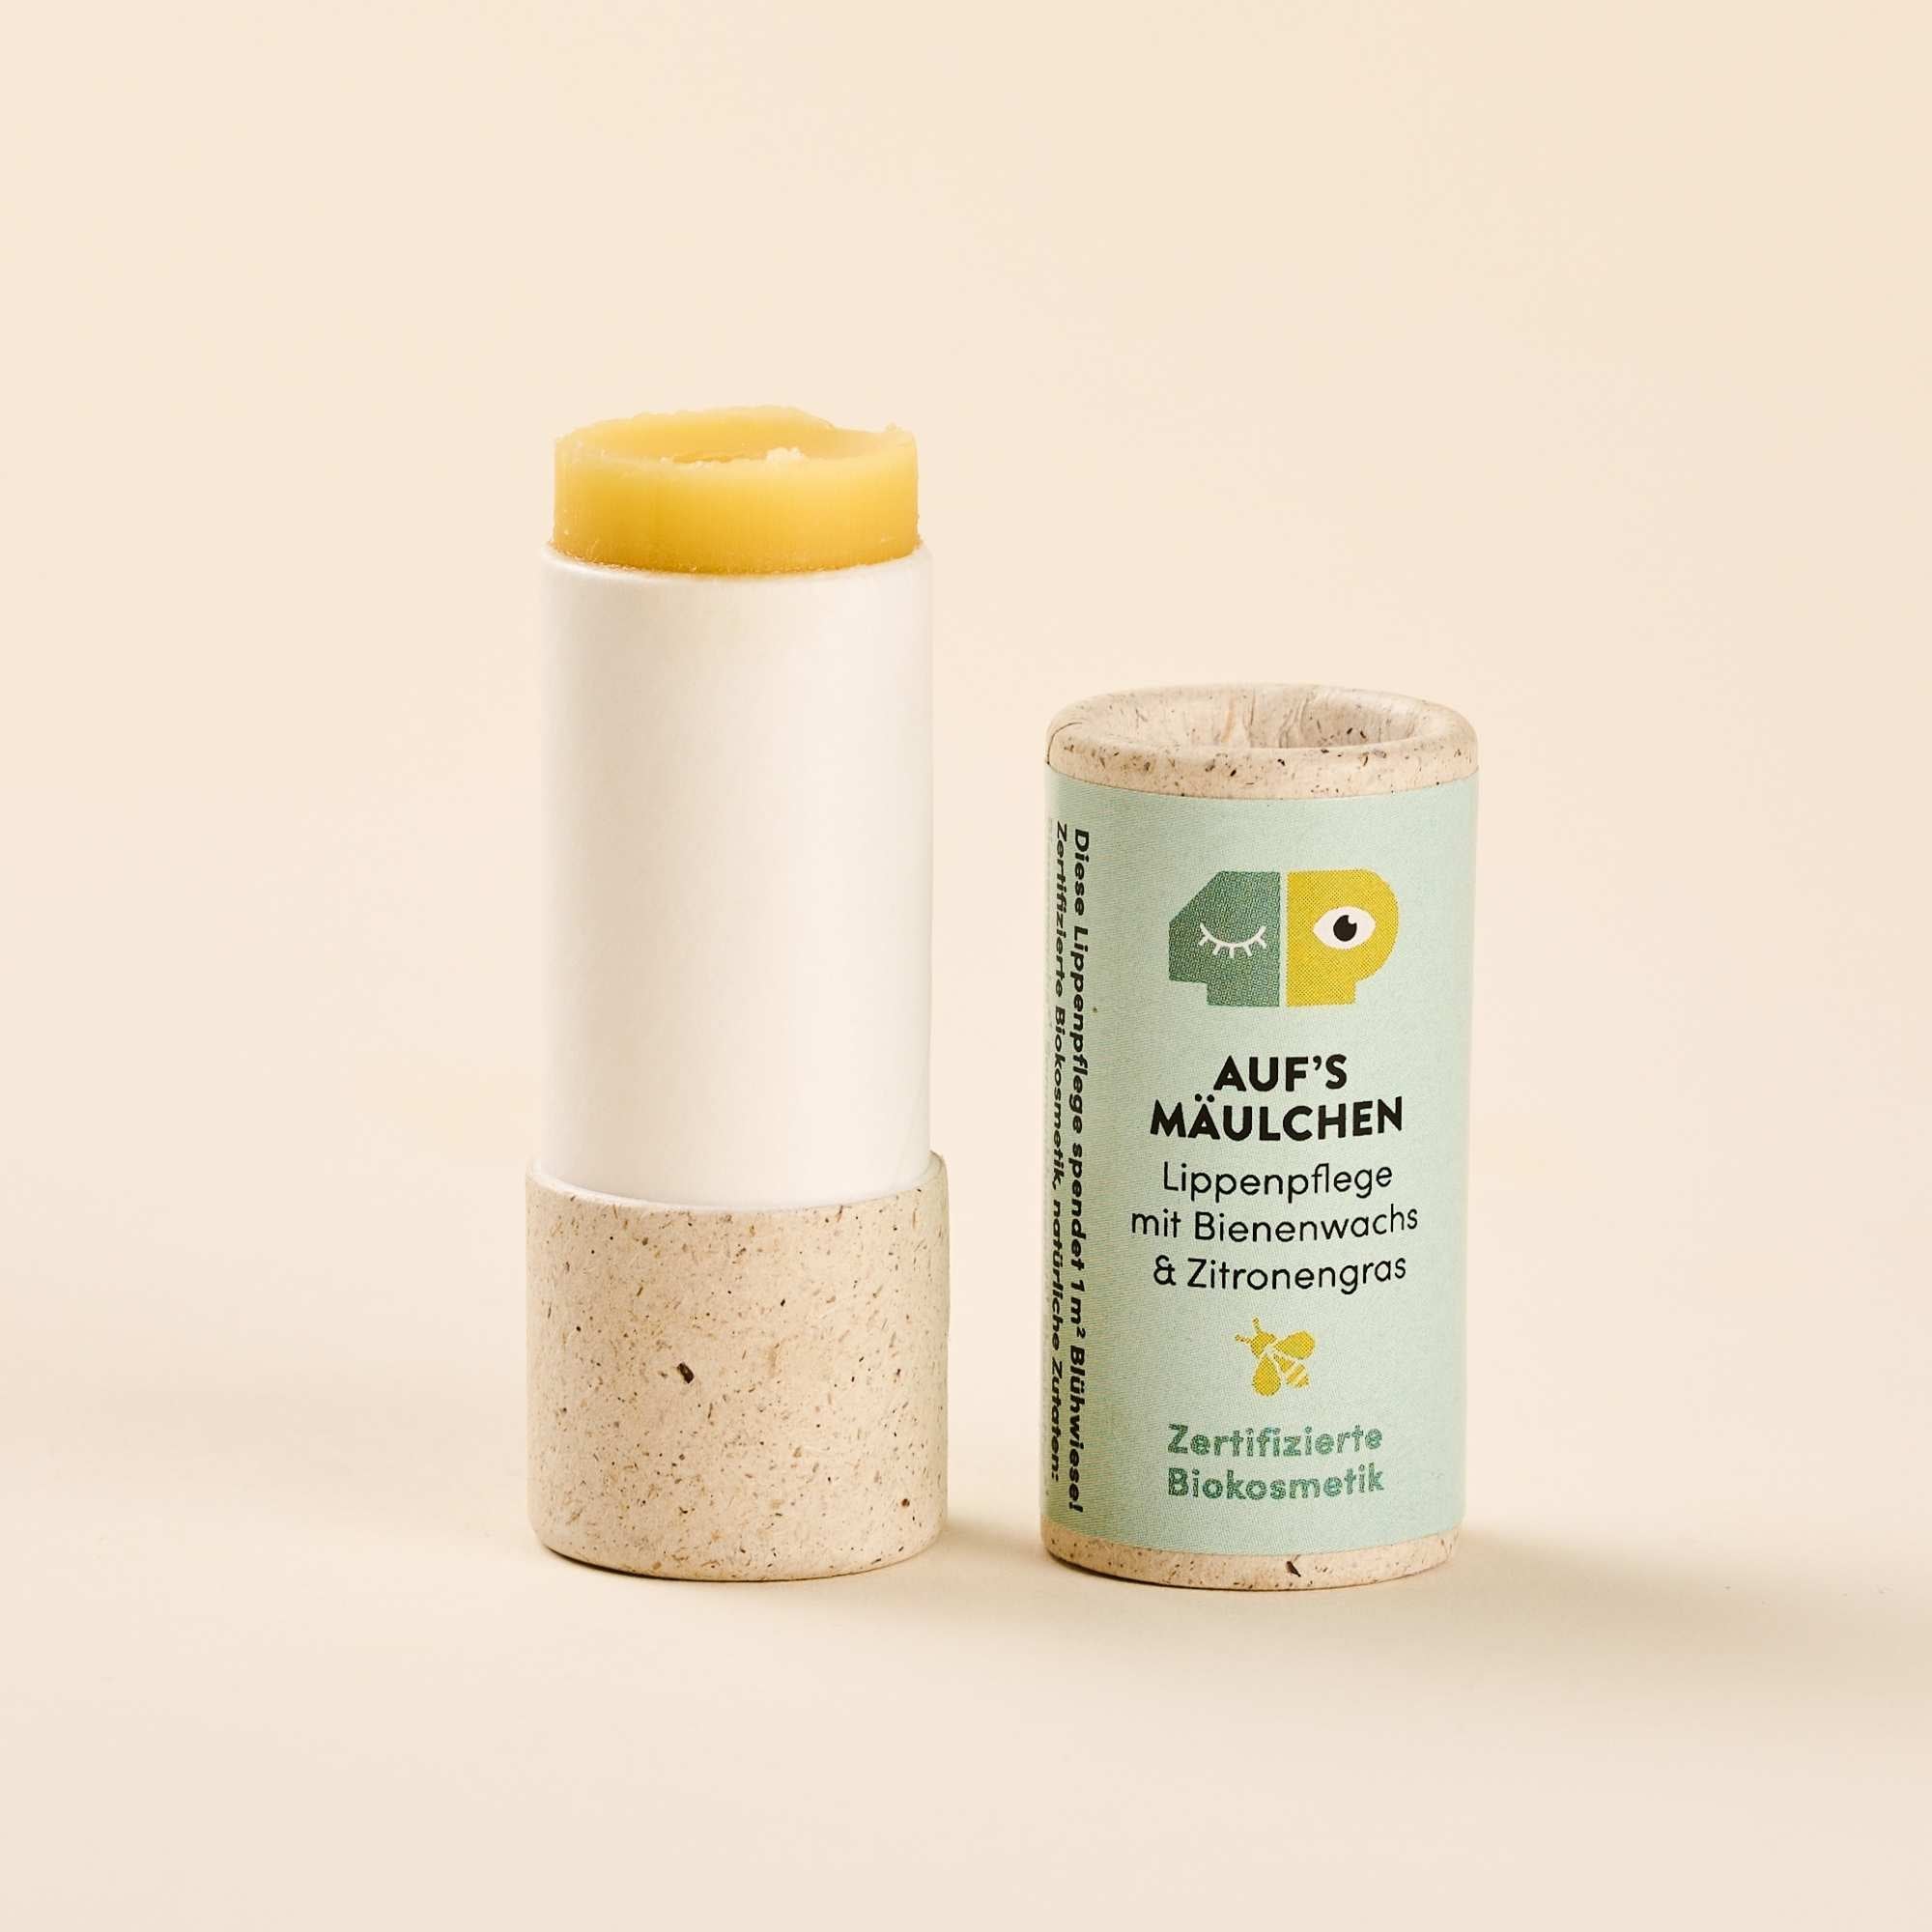 Lippenpflege mit Bienenwachs und Zitronengras, bio & plastikfrei - 10g